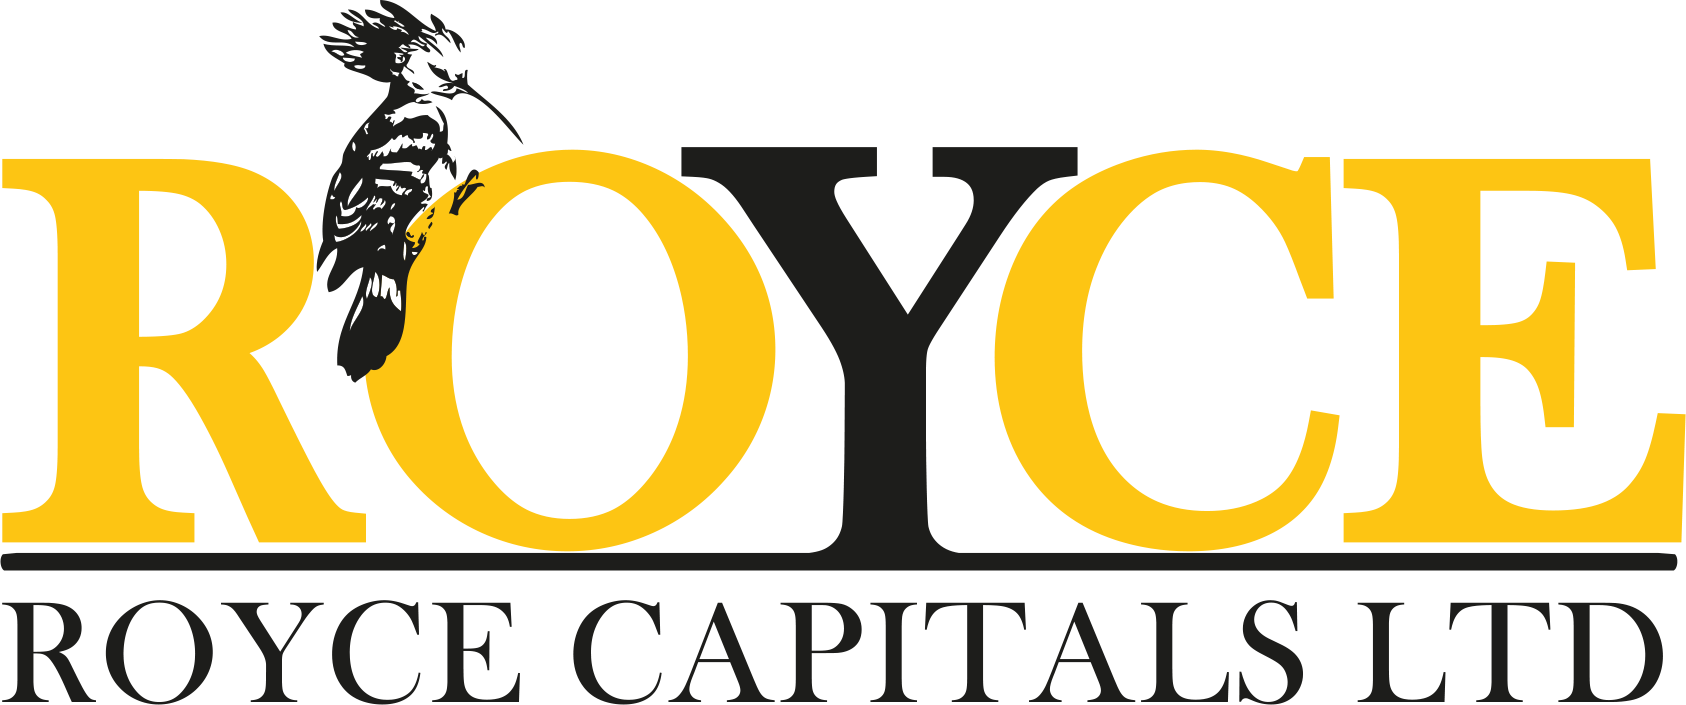 Royce logo